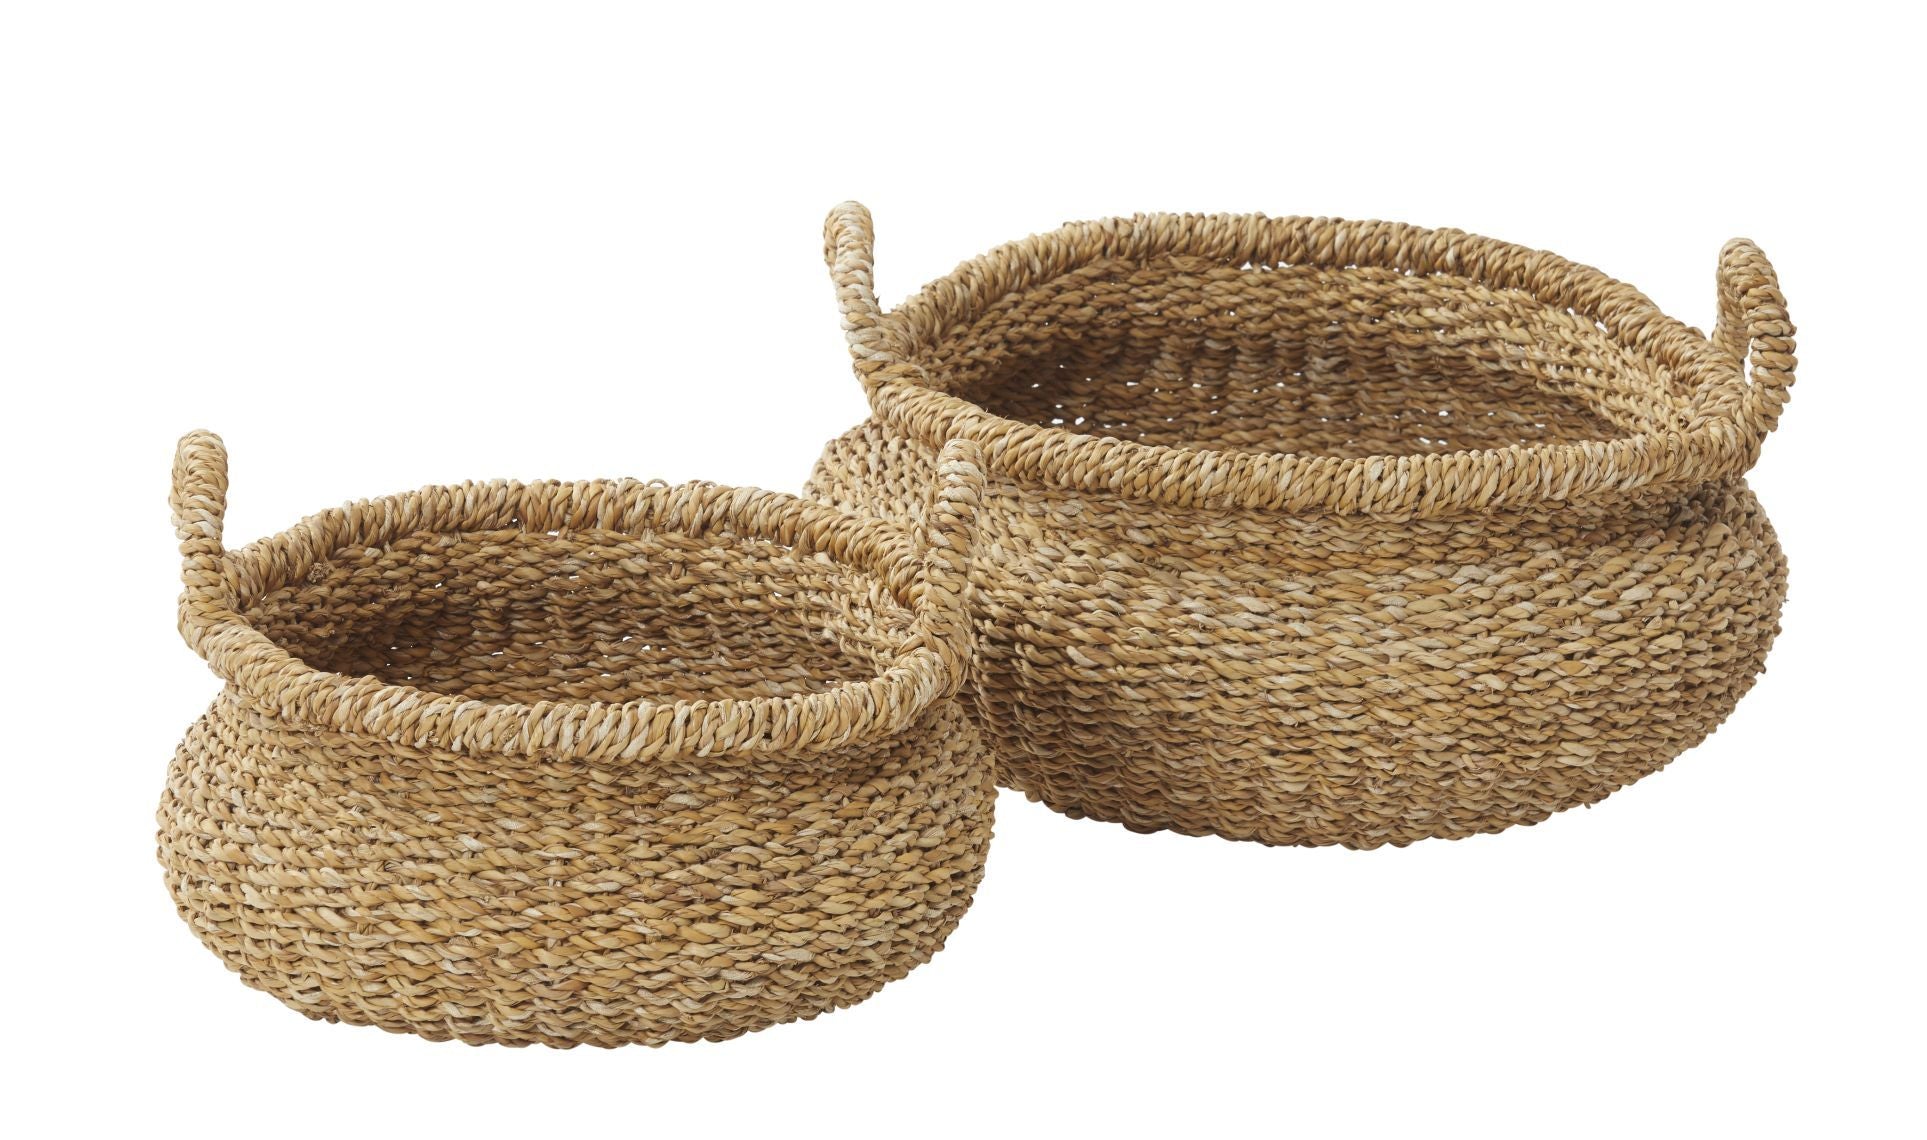 Tongi baskets